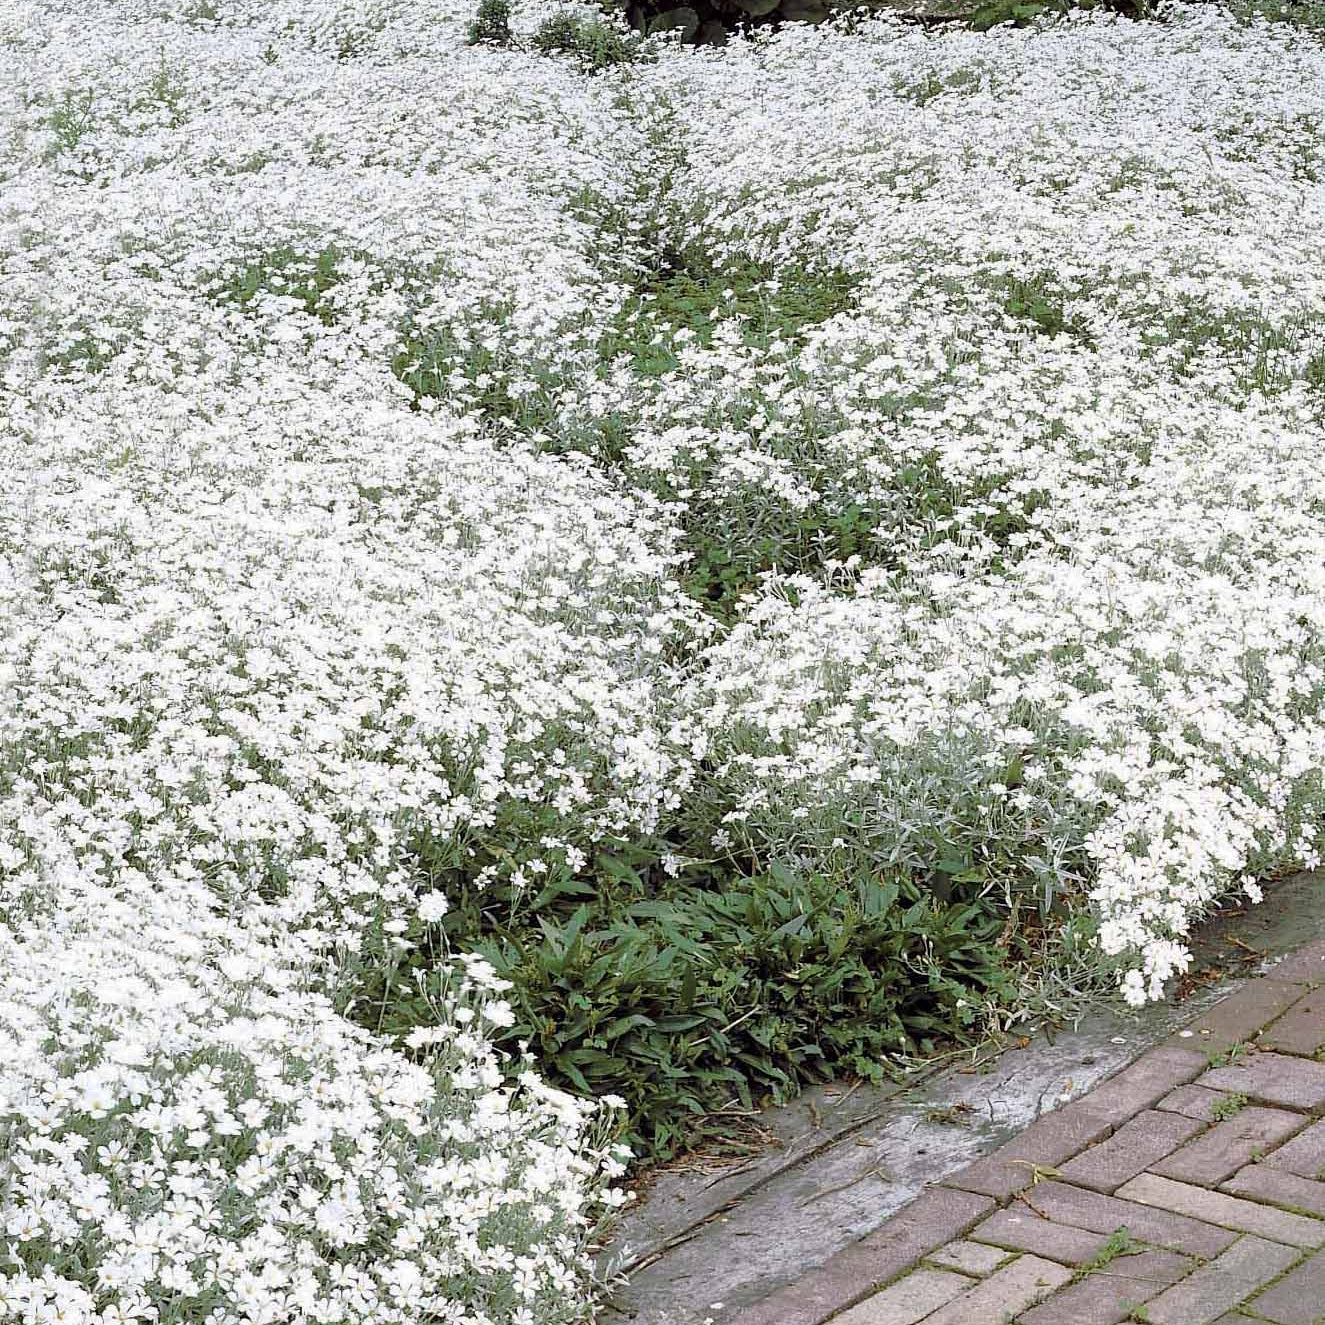 Fleur blanche : les 30 plus belles fleurs blanches pour le jardin